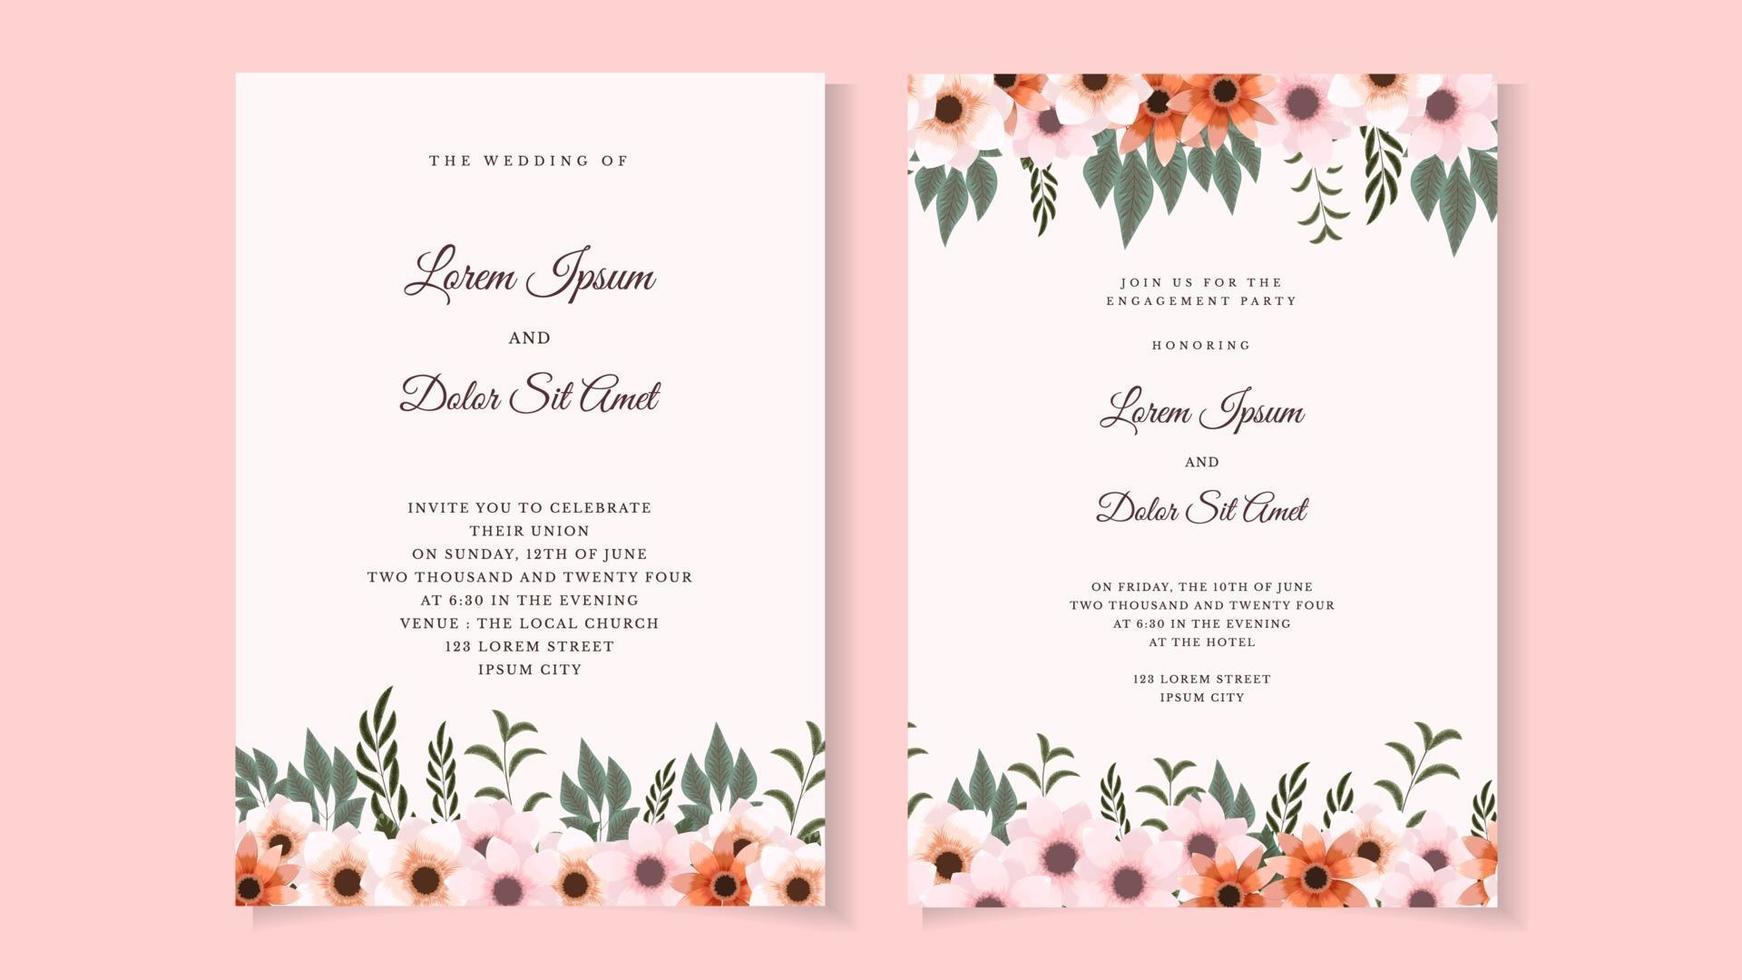 Botanische Hochzeit Hochzeit Einladung Kartenvorlage Wildblumen Laub vektor